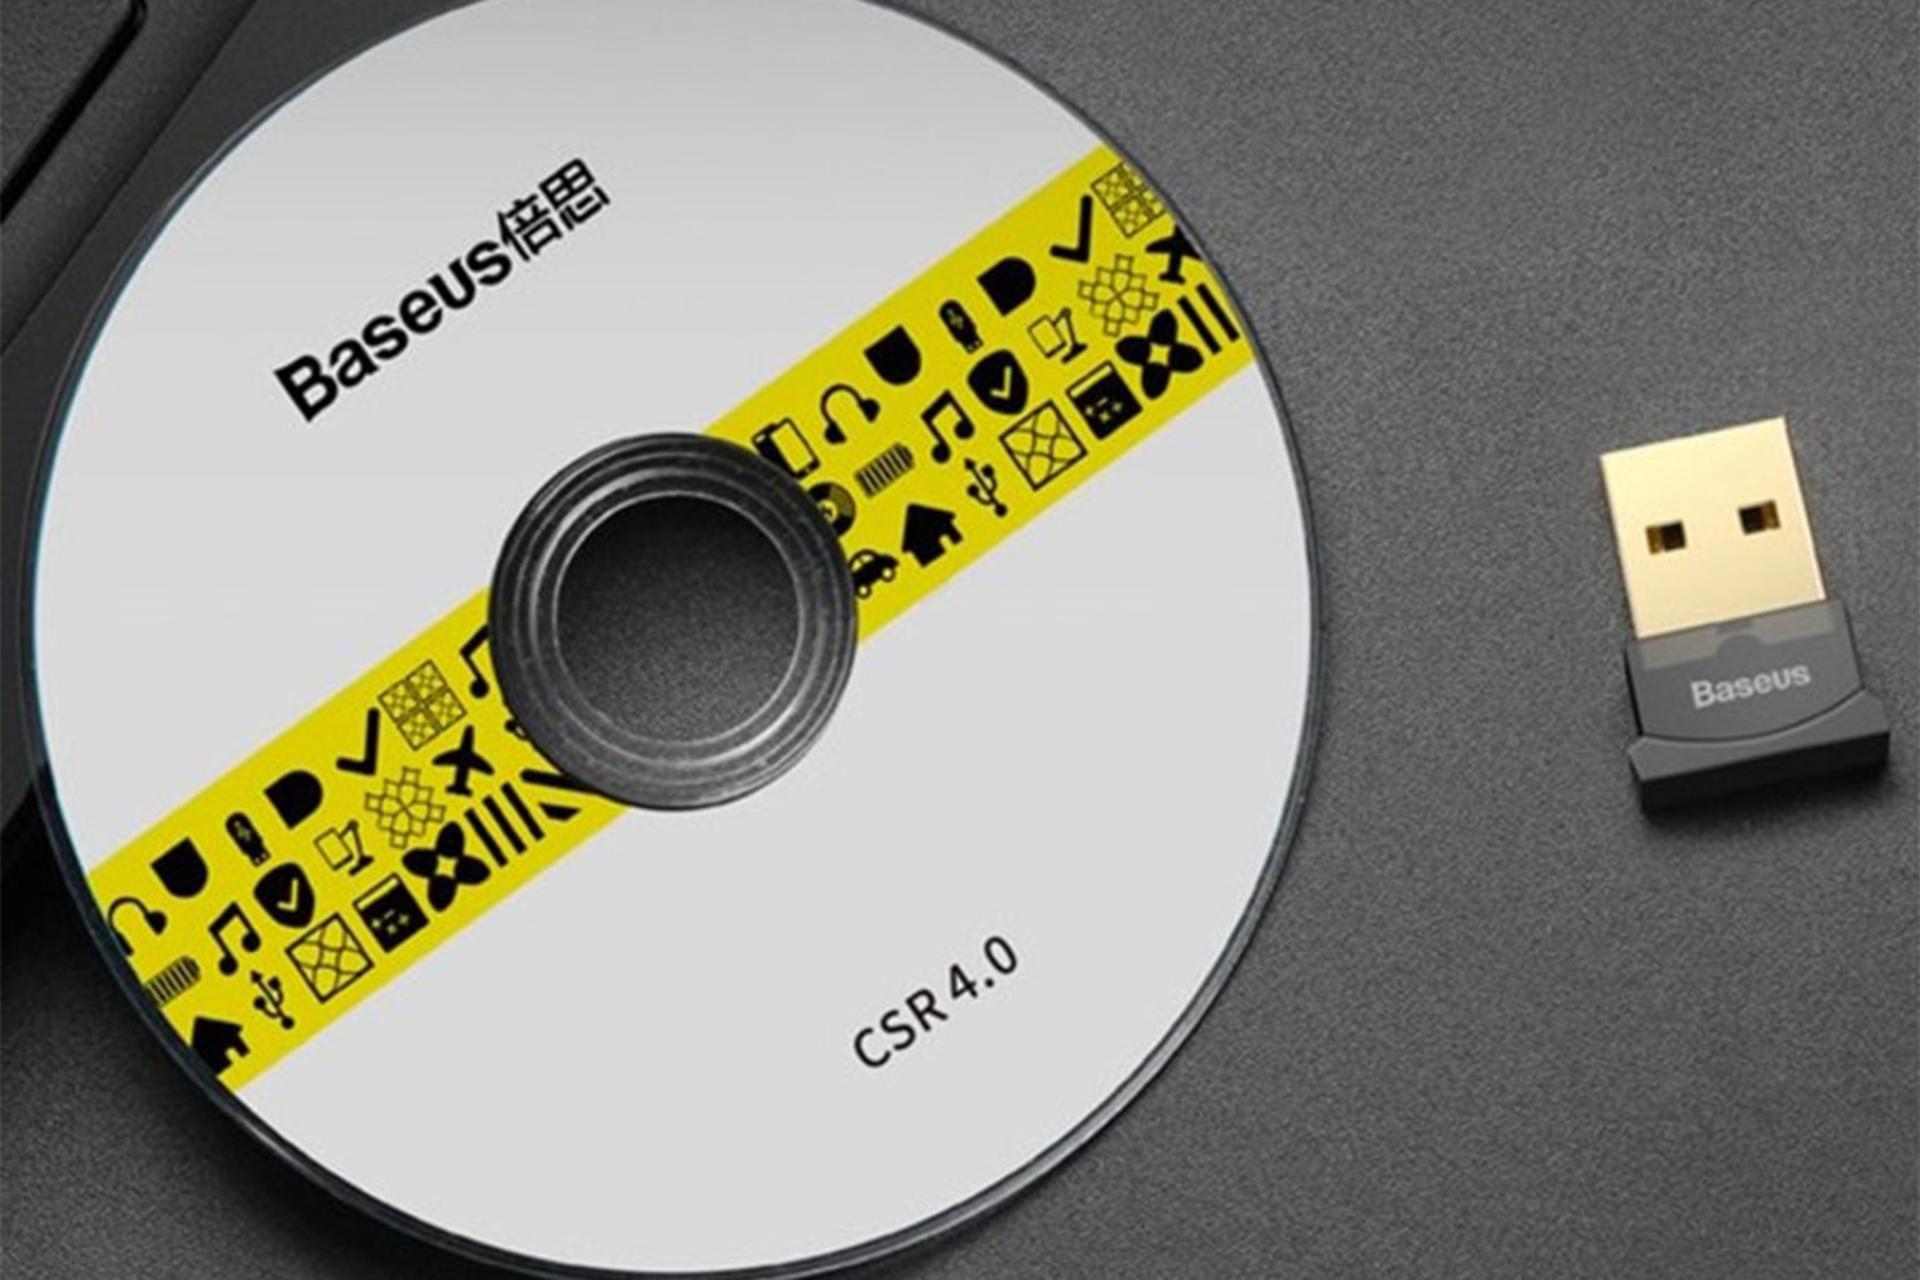 ابعاد دانگل بلوتوث باسئوس Baseus ccall-bt01 در کنار CD